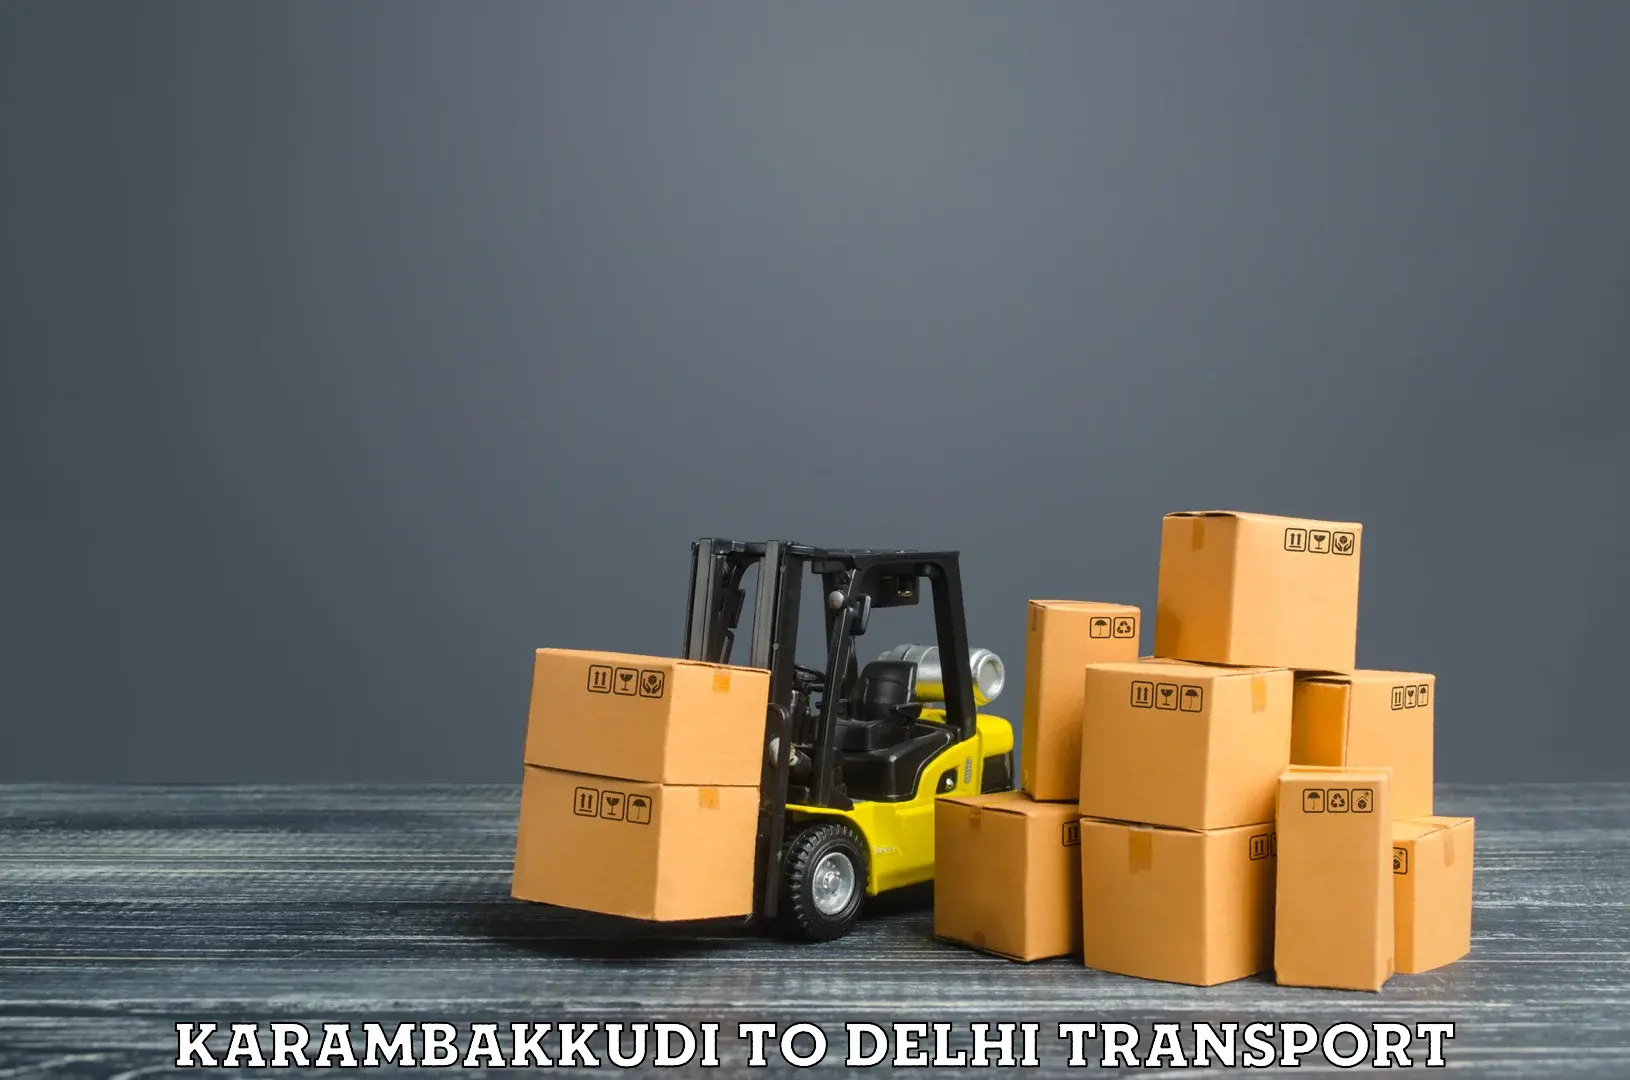 Part load transport service in India Karambakkudi to NCR